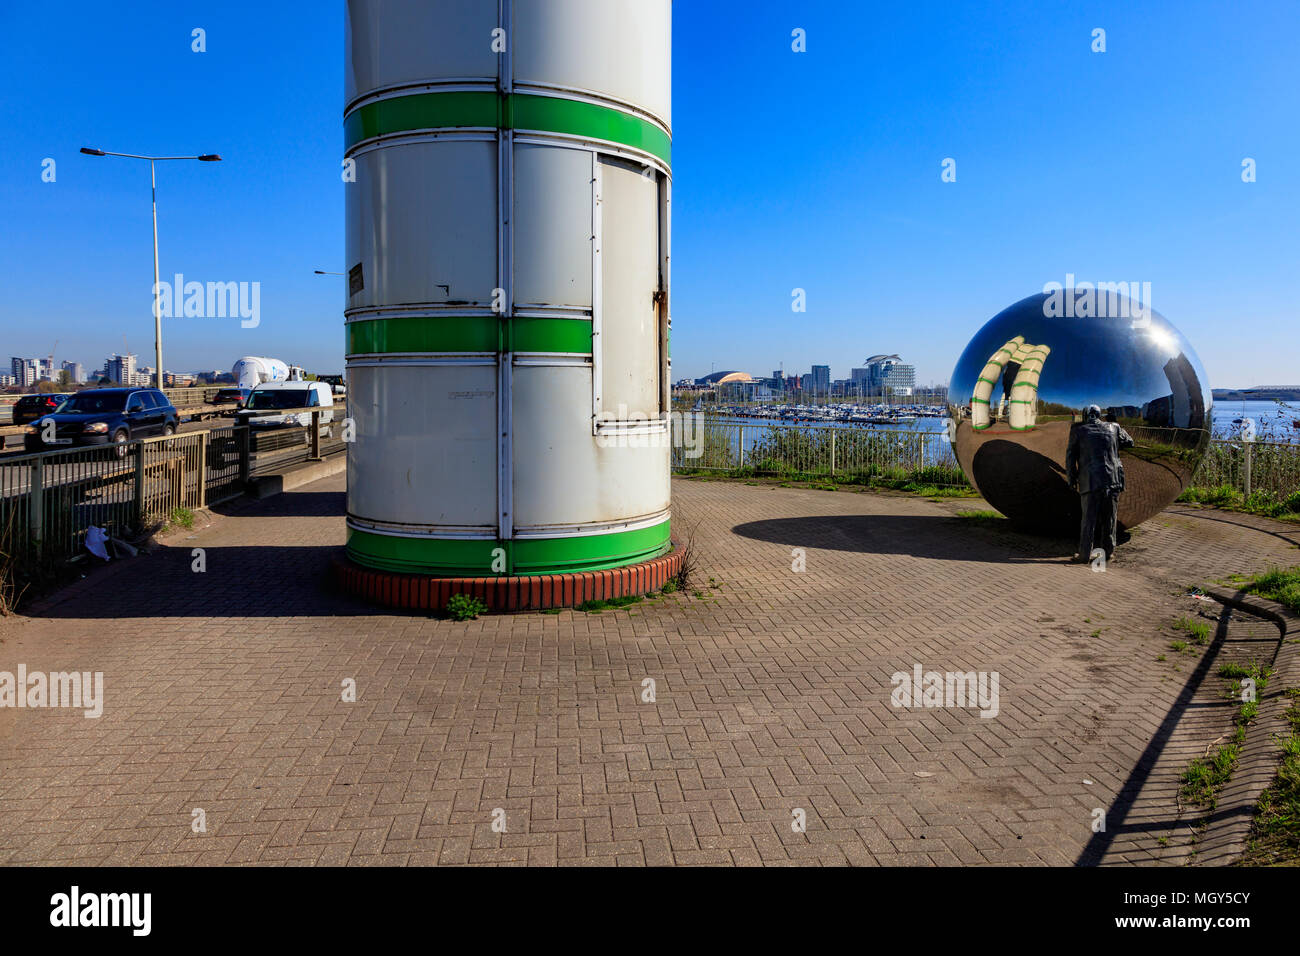 Une salle de vue. Une boule avec une figure à l'analyser sur un pont routier transportant la A4232 sur la baie de Cardiff. Cardiff, Wales, UK Banque D'Images